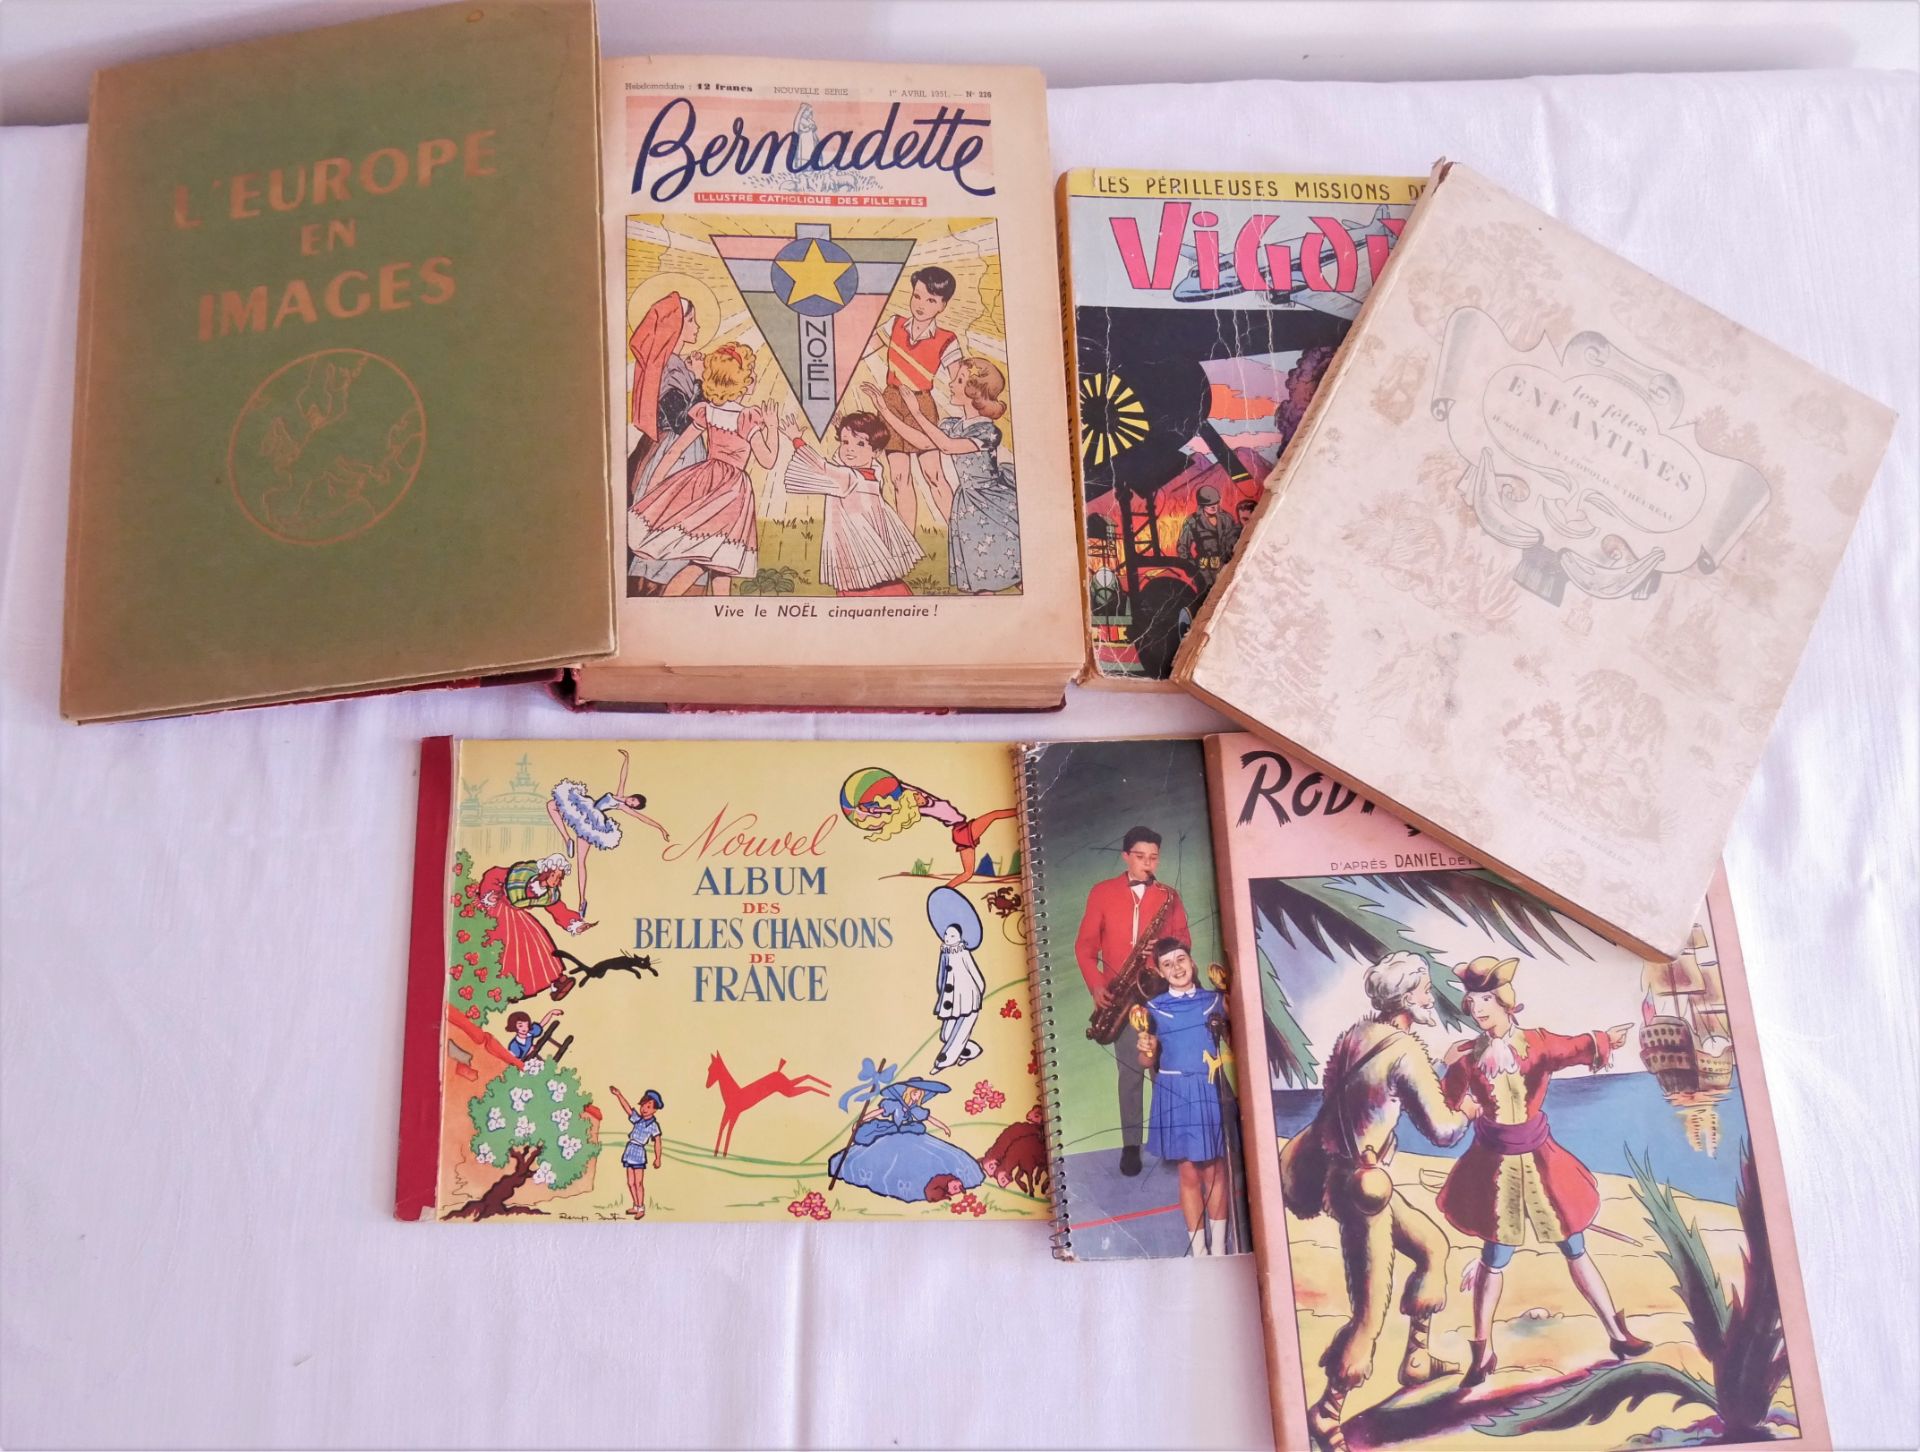 Lot französische Kinder-Bücher und Comics, dabei "Robinson Crusoe", "Vigor", "Bernadette" etc.,